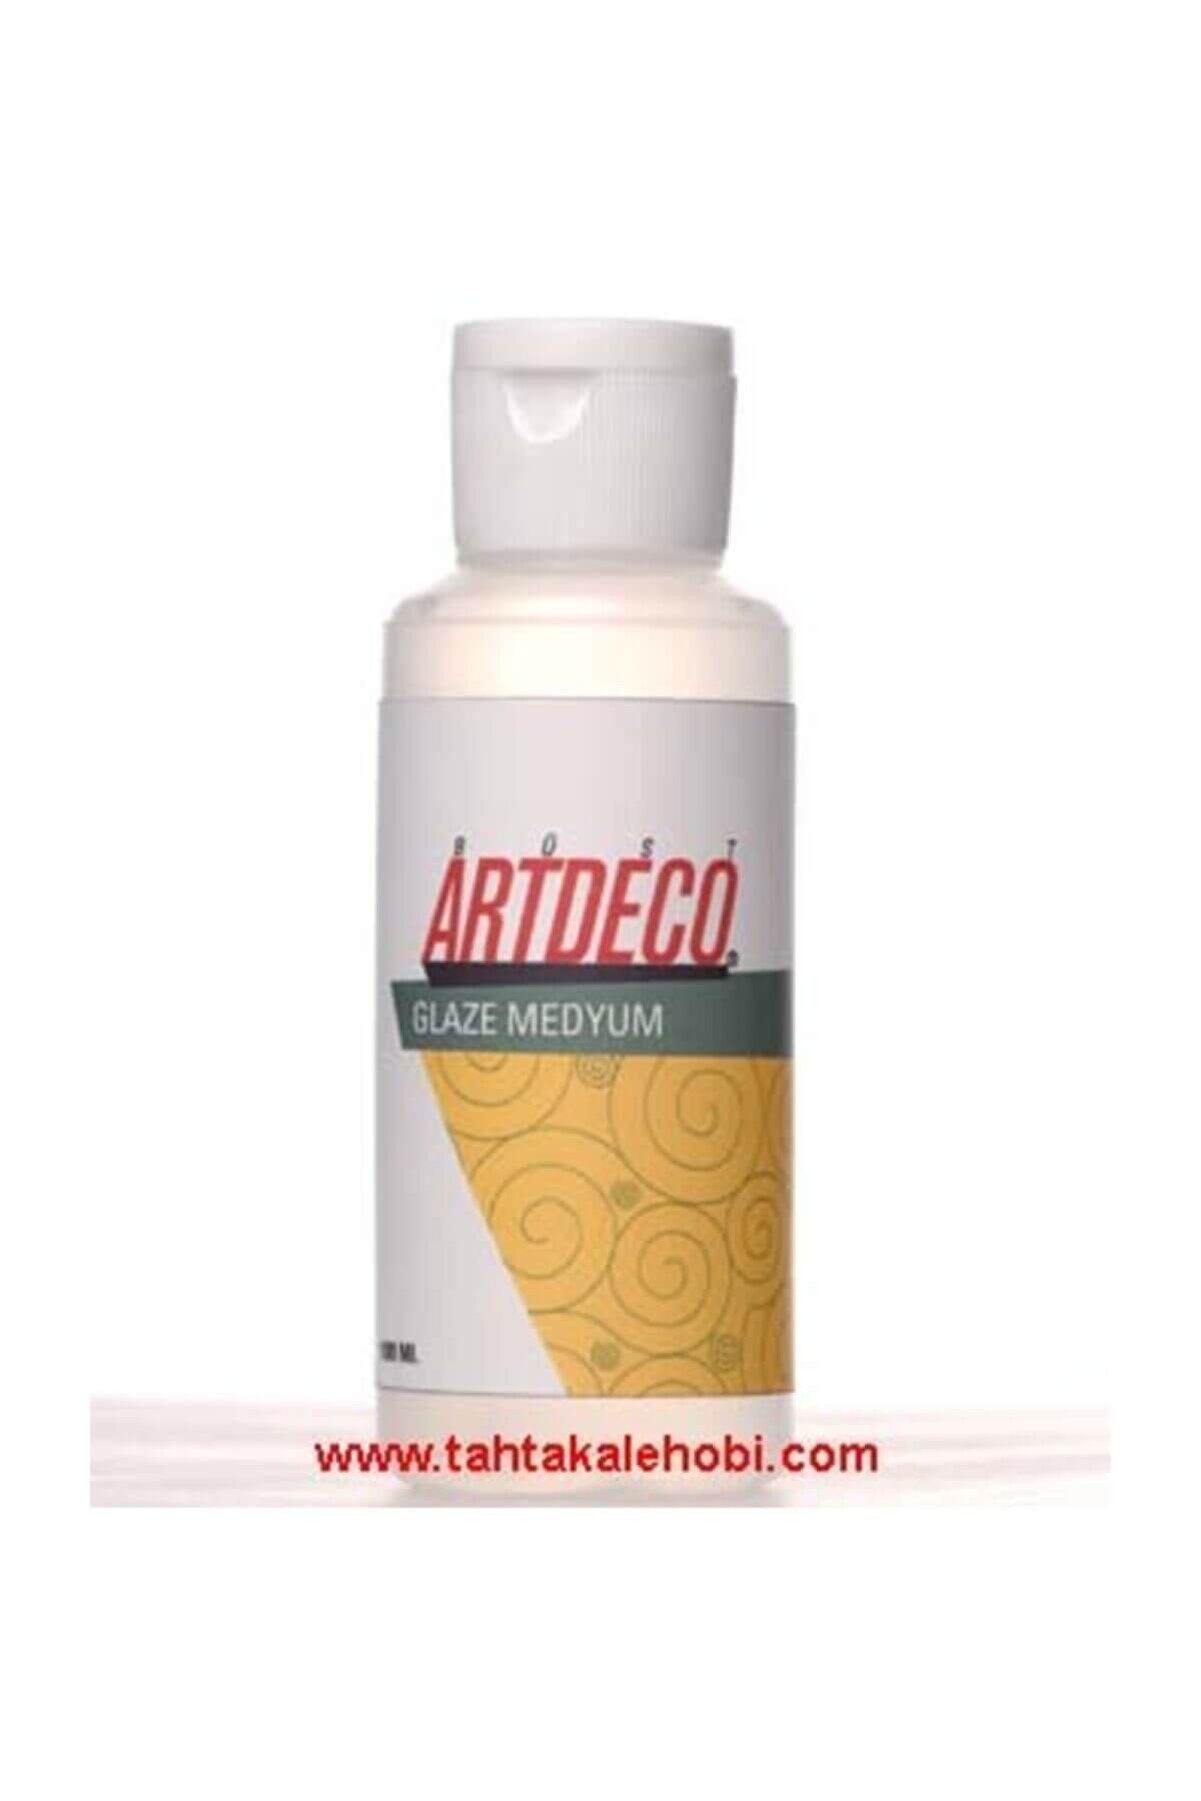 Artdeco Glaze Medyum 120 ml.